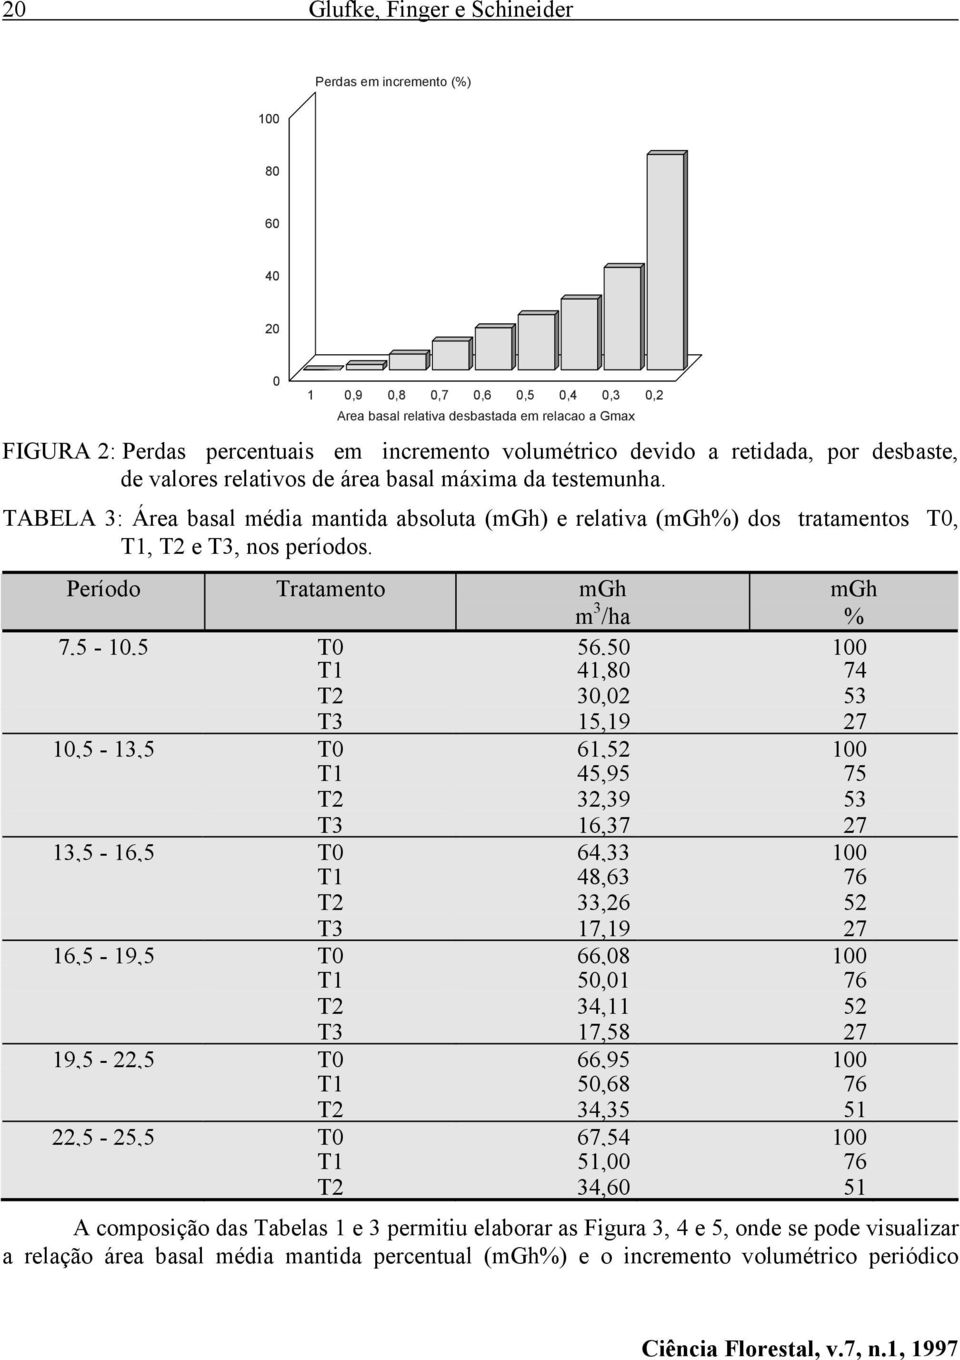 TABELA 3: Área basal média mantida absoluta (mgh) e relativa (mgh%) dos tratamentos T0,, T2 e T3, nos períodos.